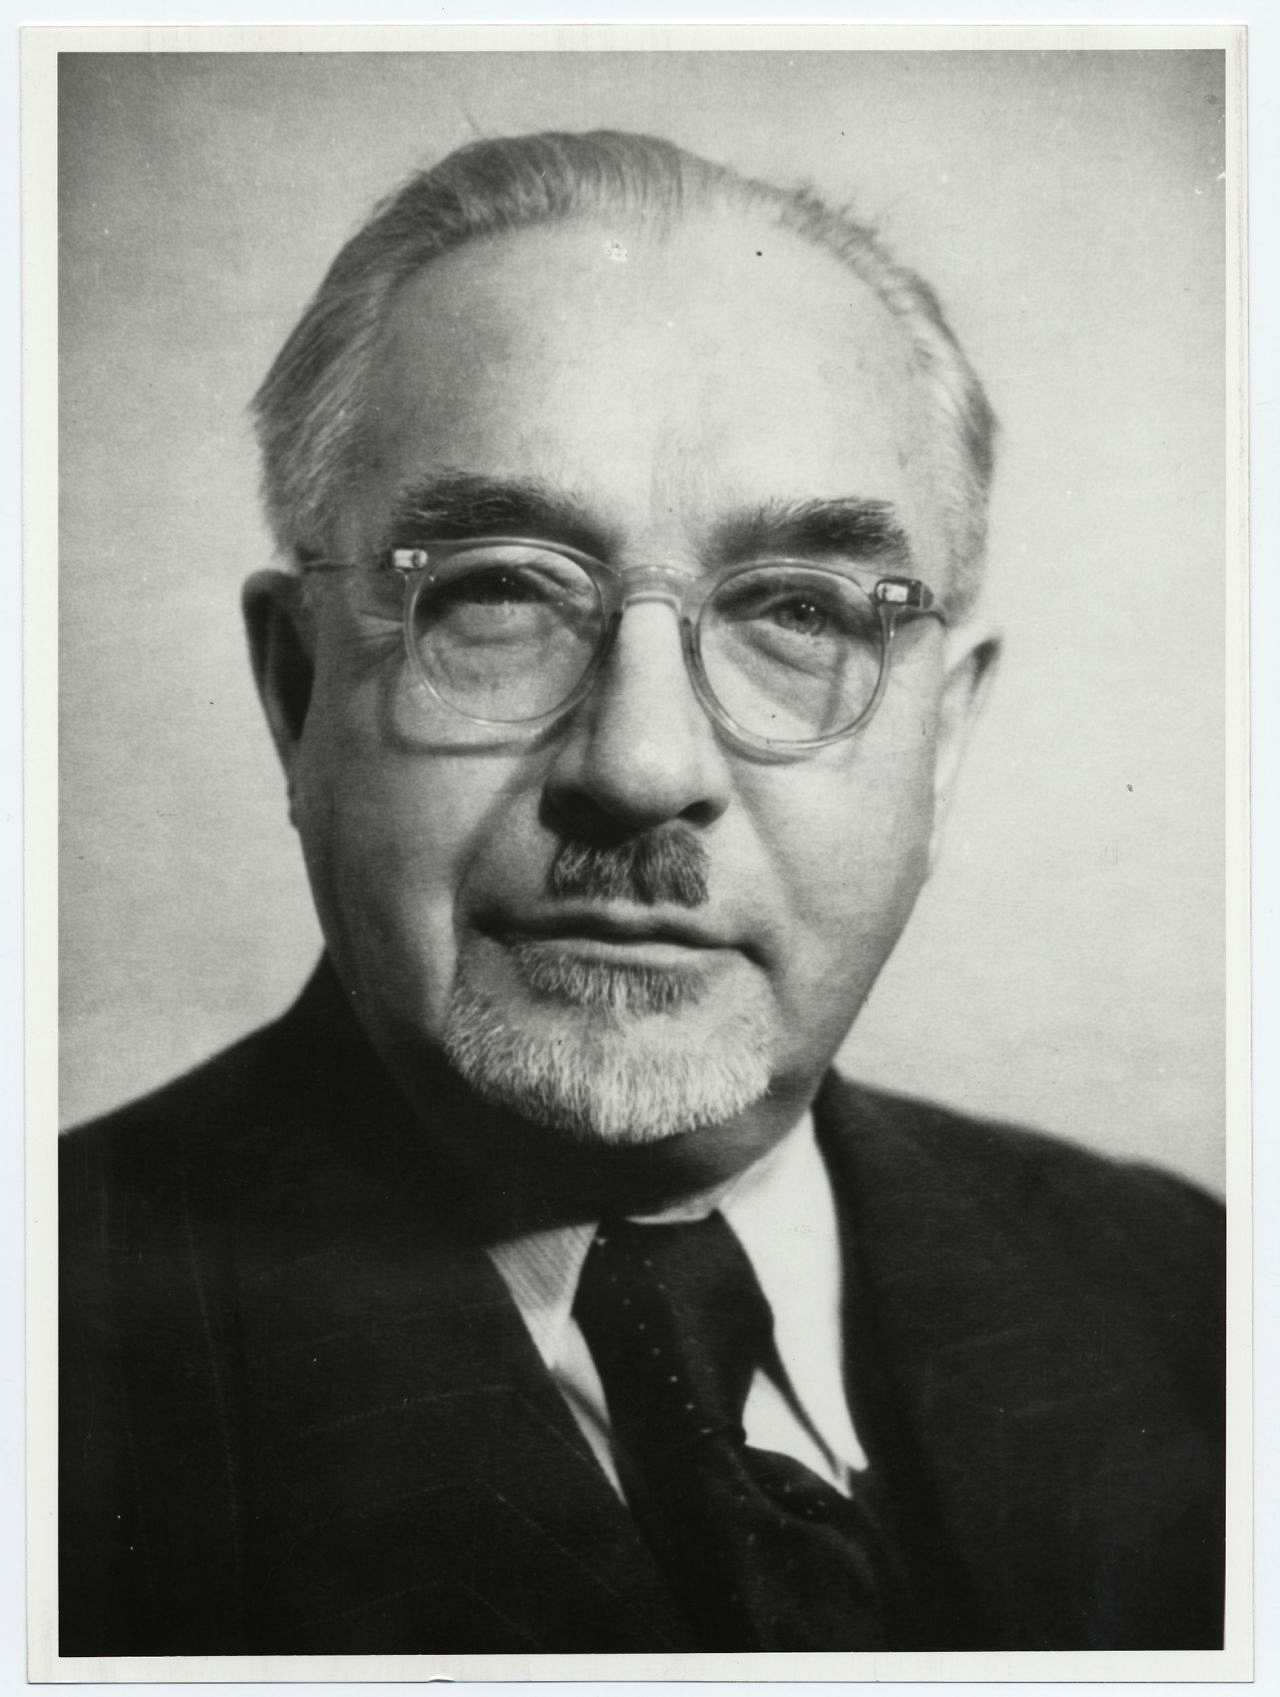 Porträtfoto von Otto Nuschke (CDU), Politiker und Stellvertreter des Ministerpräsidenten der DDR, 1953.